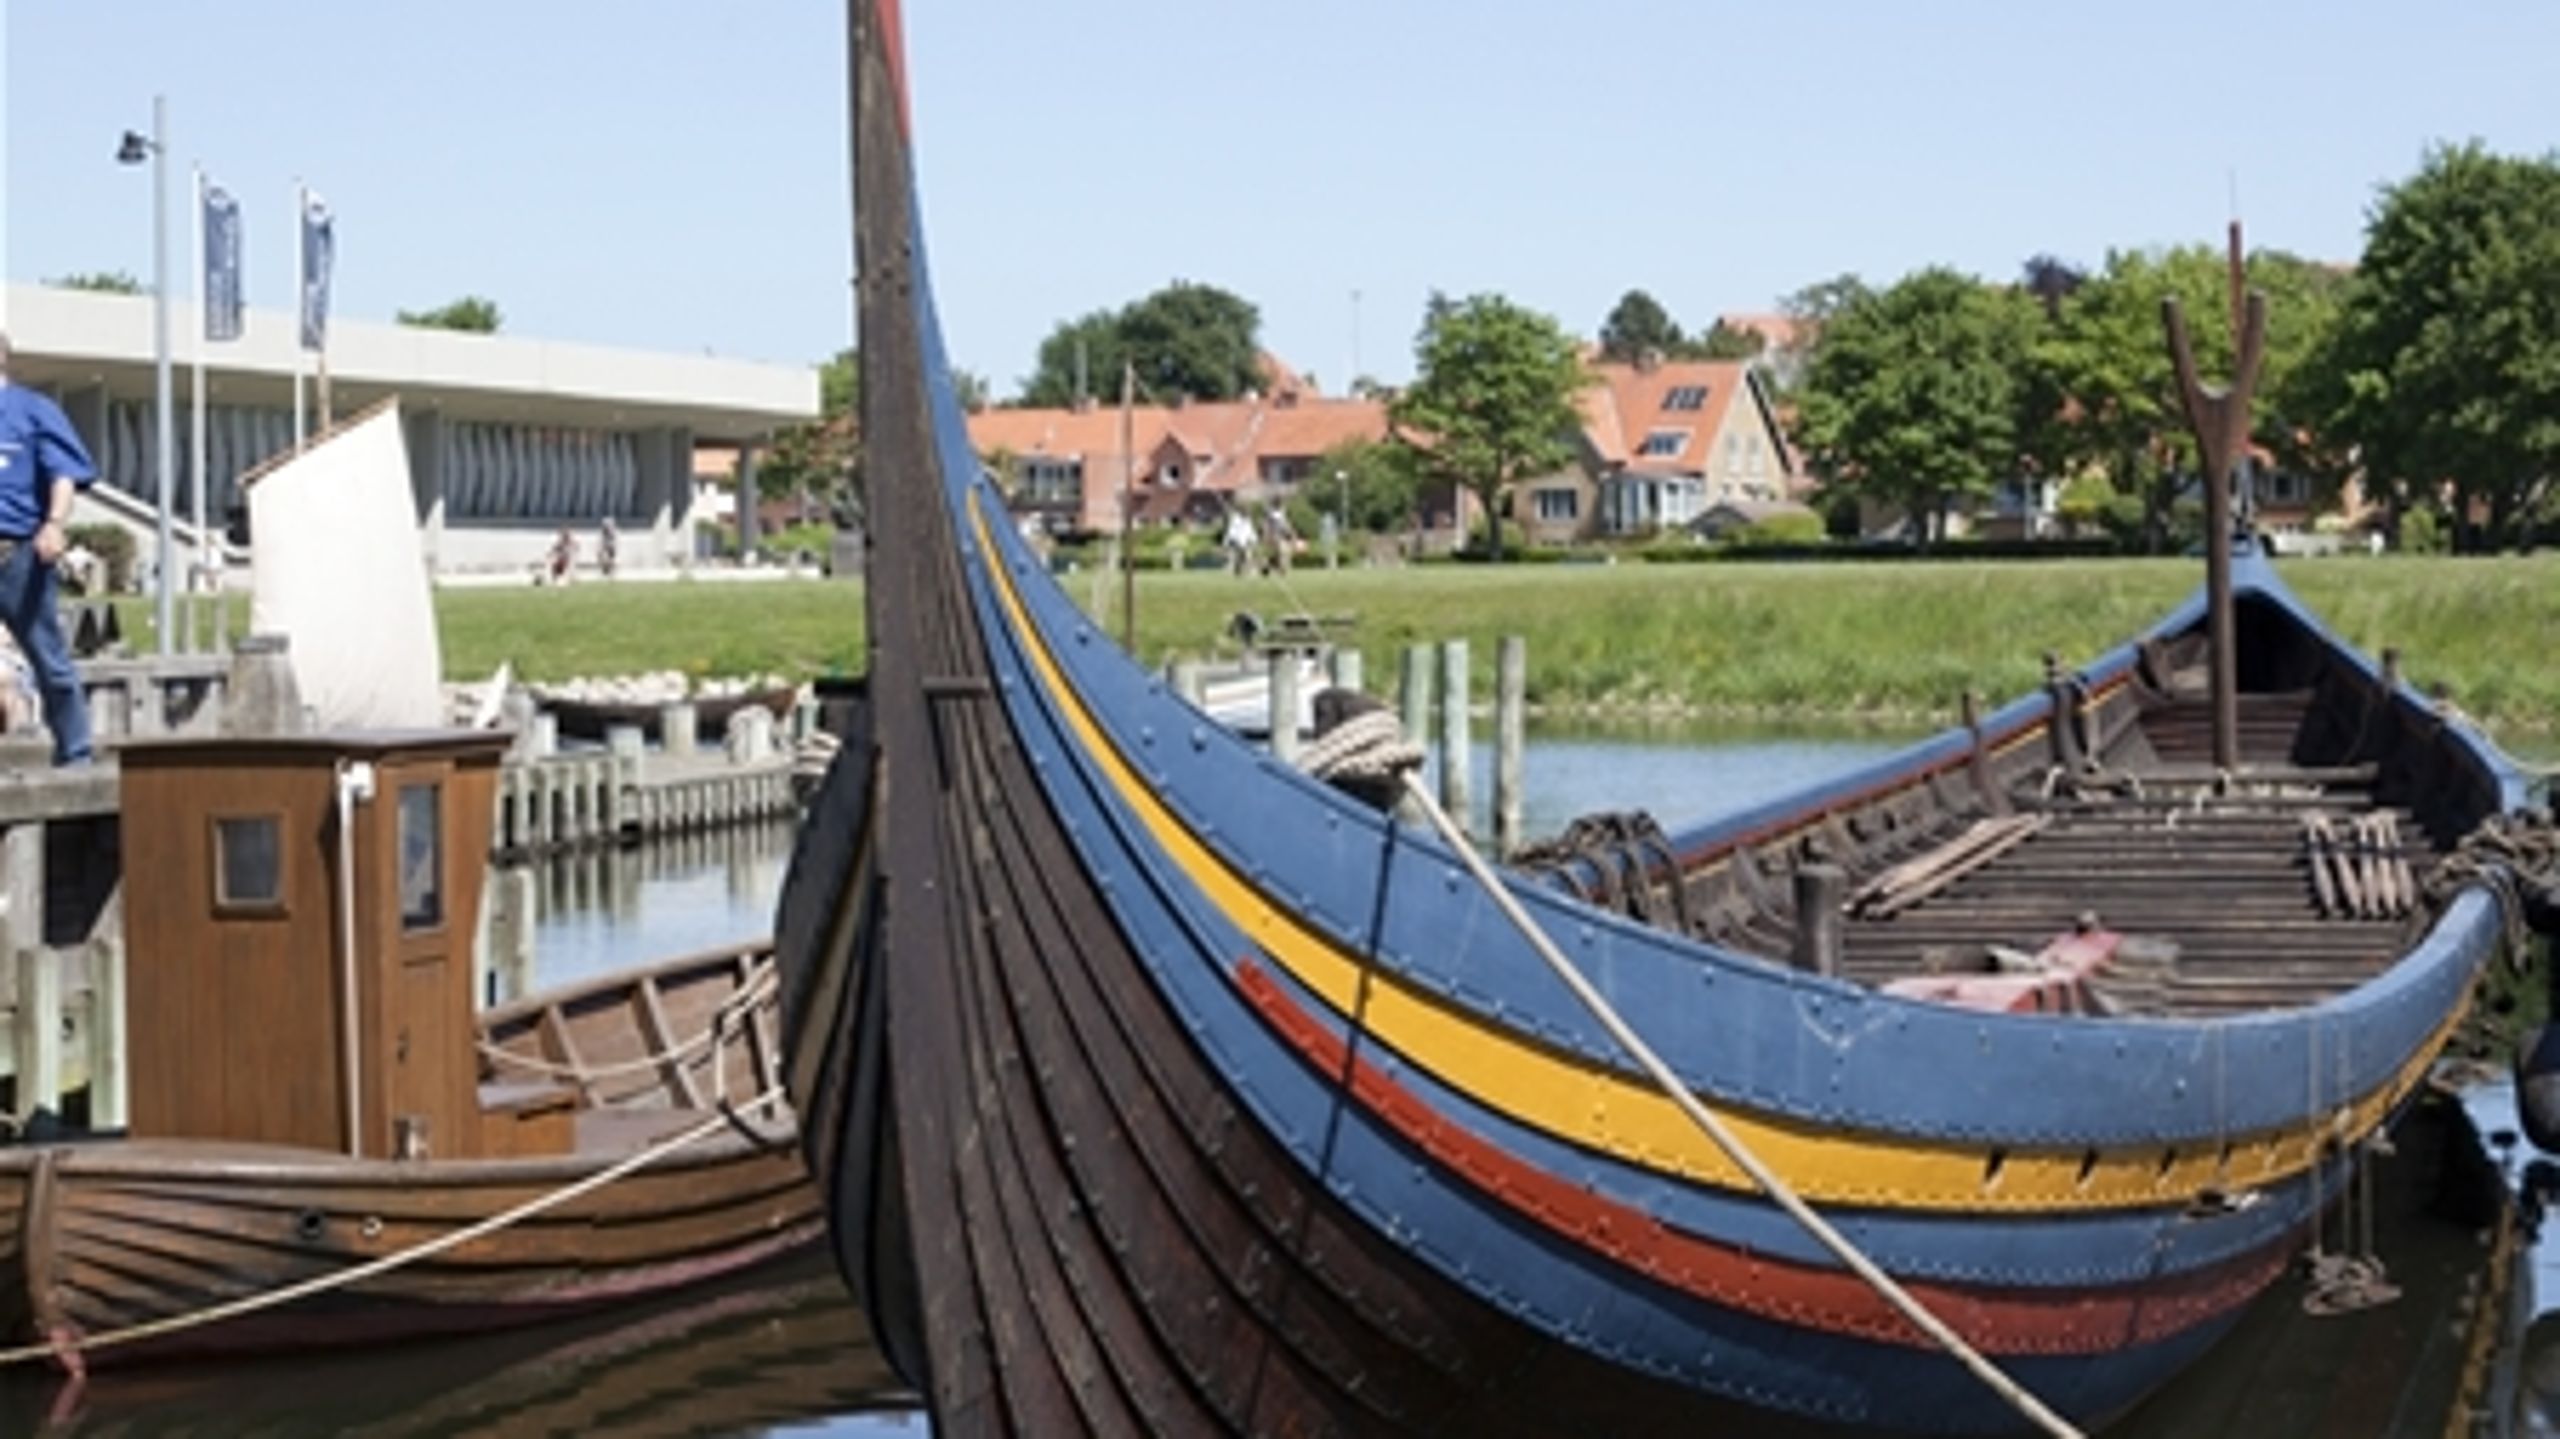 Vikingeskibsmuseet i Roskilde er et af de seks museer, der indgår i samarbejdet med RUC.